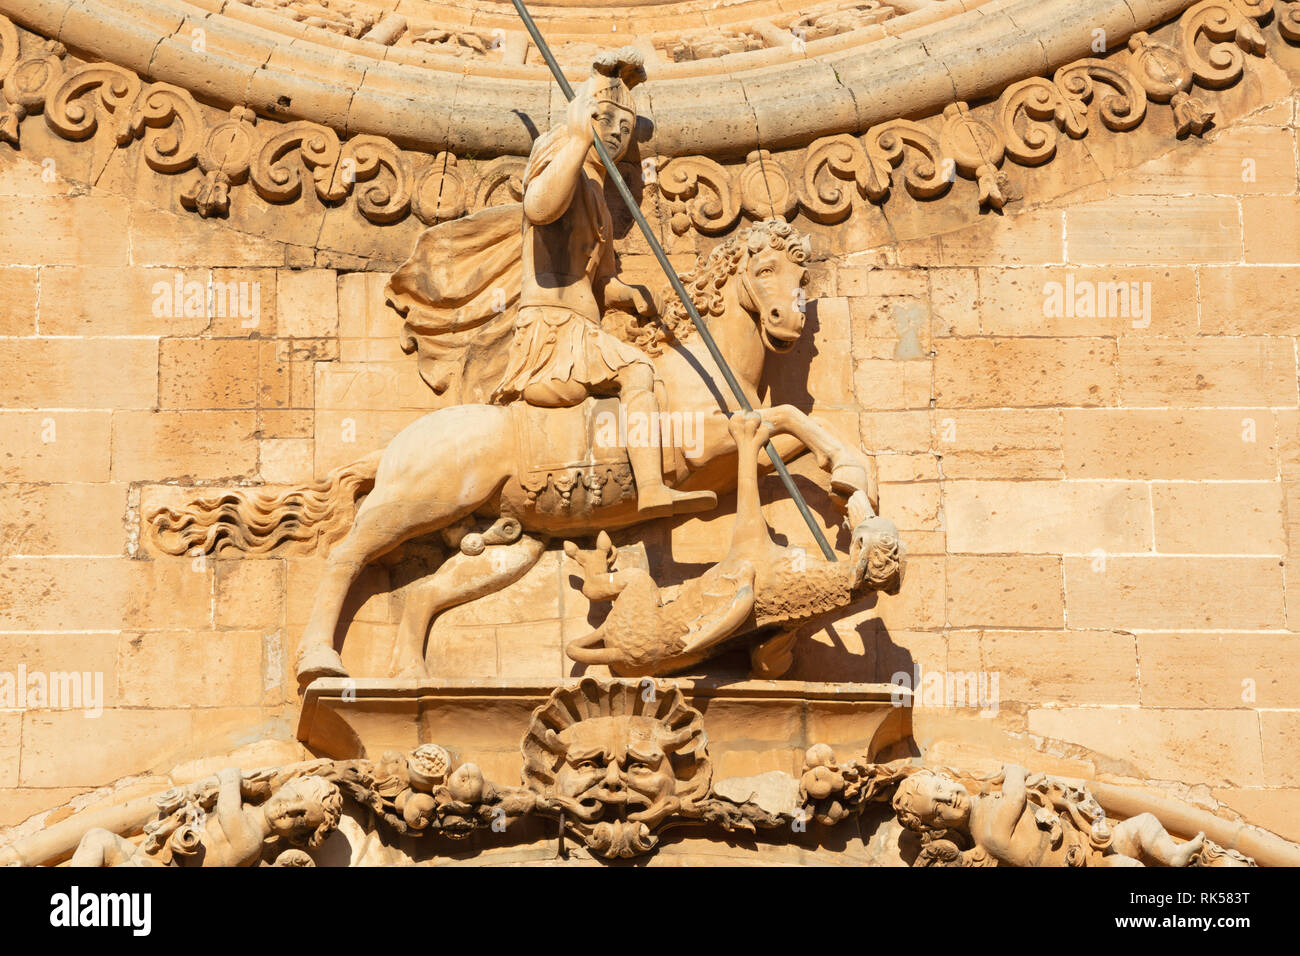 PALMA DE MALLORCA, Spagna - 27 gennaio 2019: Il San Giorgio statua sul portale barocco della chiesa Iglesia de San Francisco da Pere Horrach e Franci Foto Stock